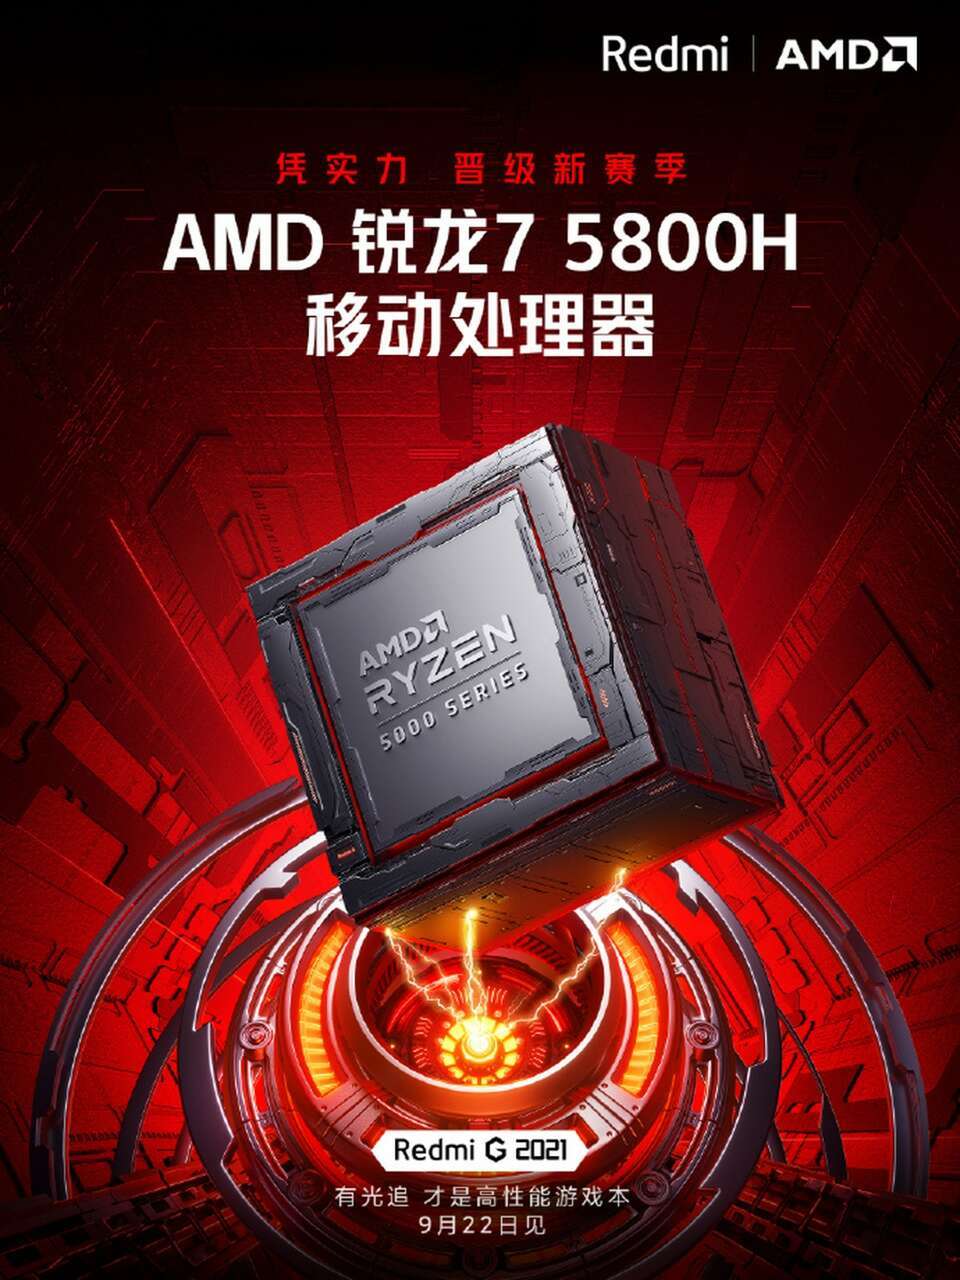 Redmi G 2021 AMD Ryzen 7 5800H